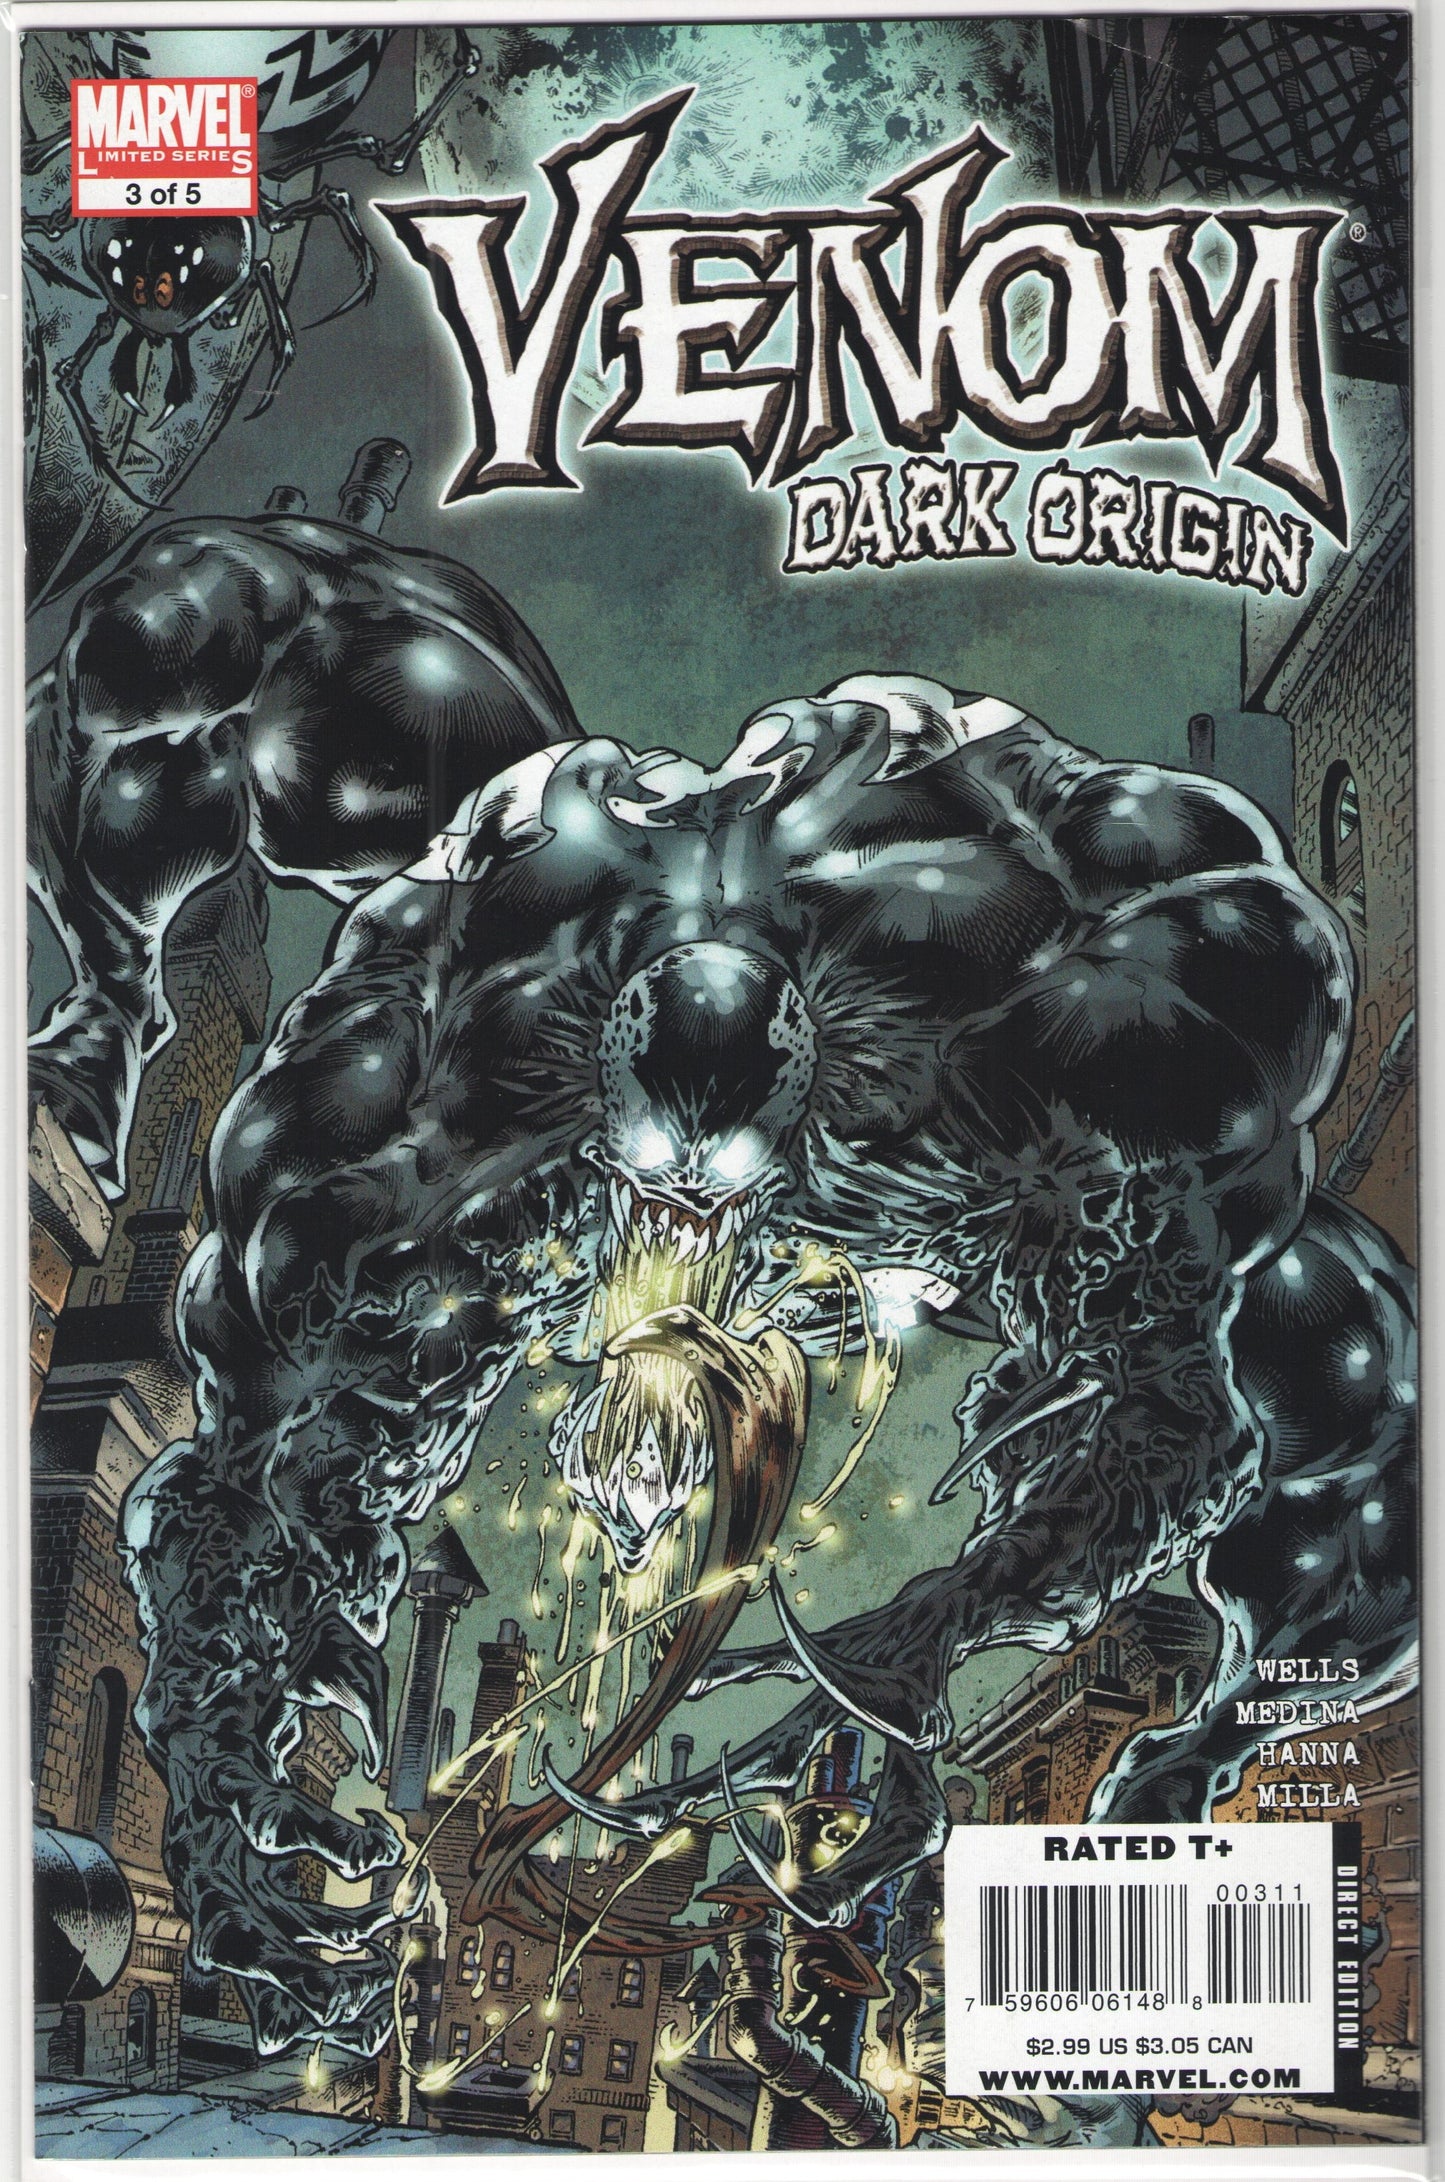 Venom: Dark Origin (2009) Complete Limited Series